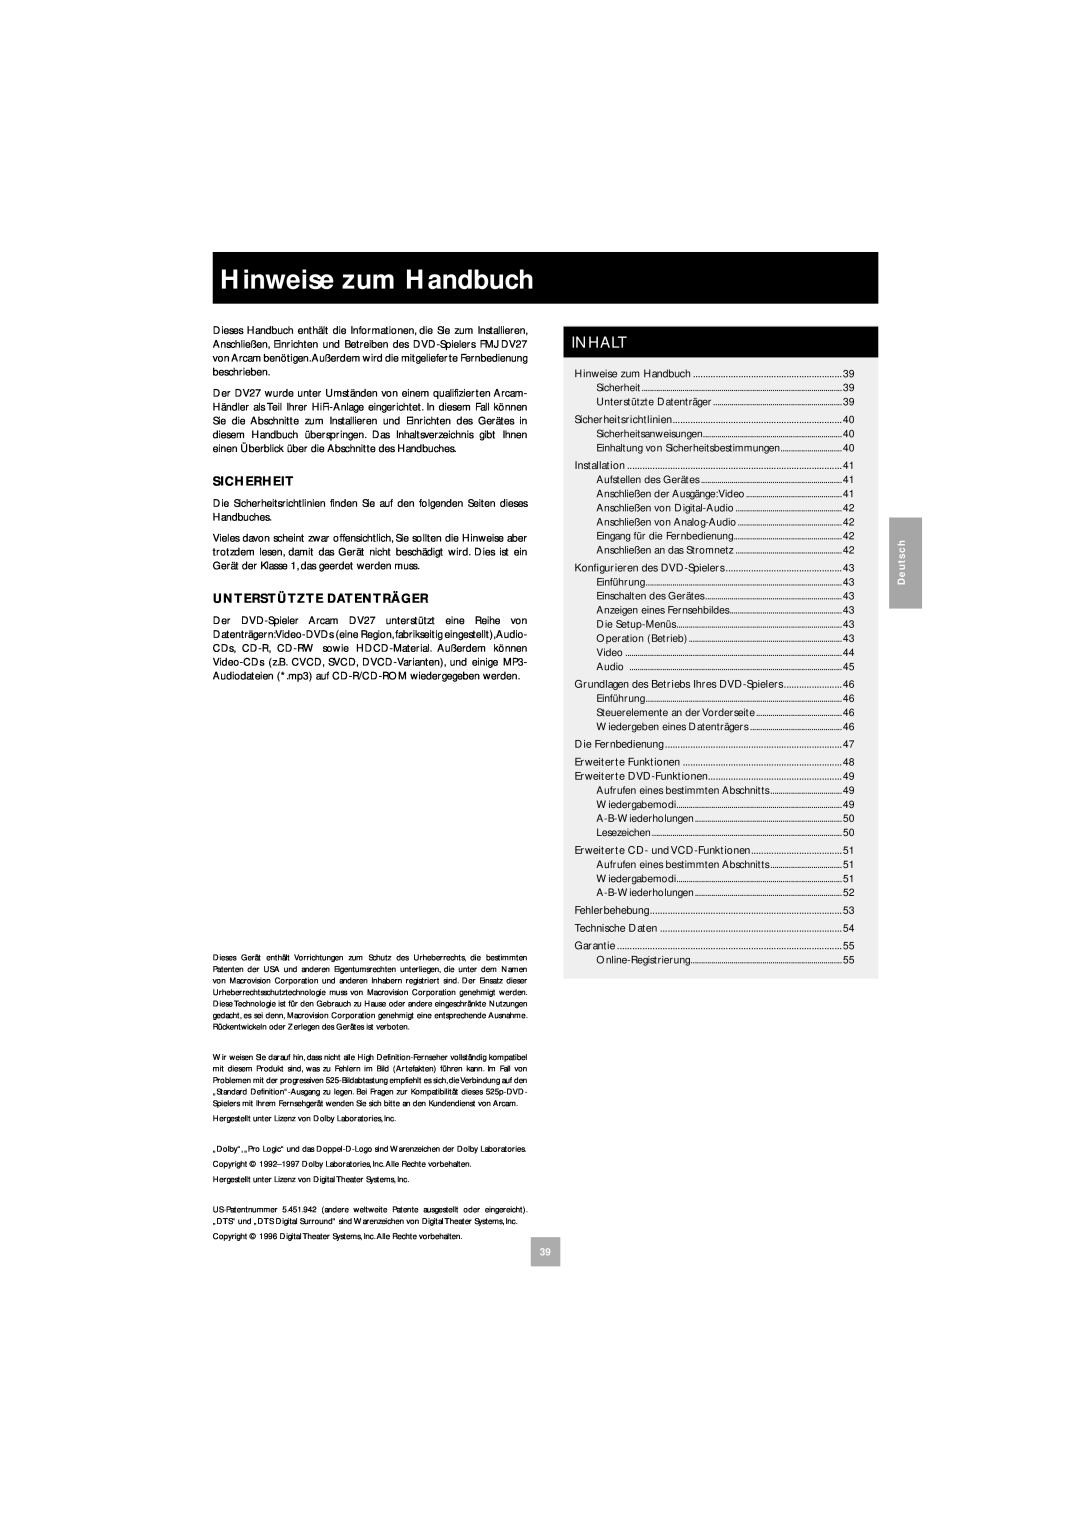 Arcam DV27 manual Hinweise zum Handbuch, Inhalt 